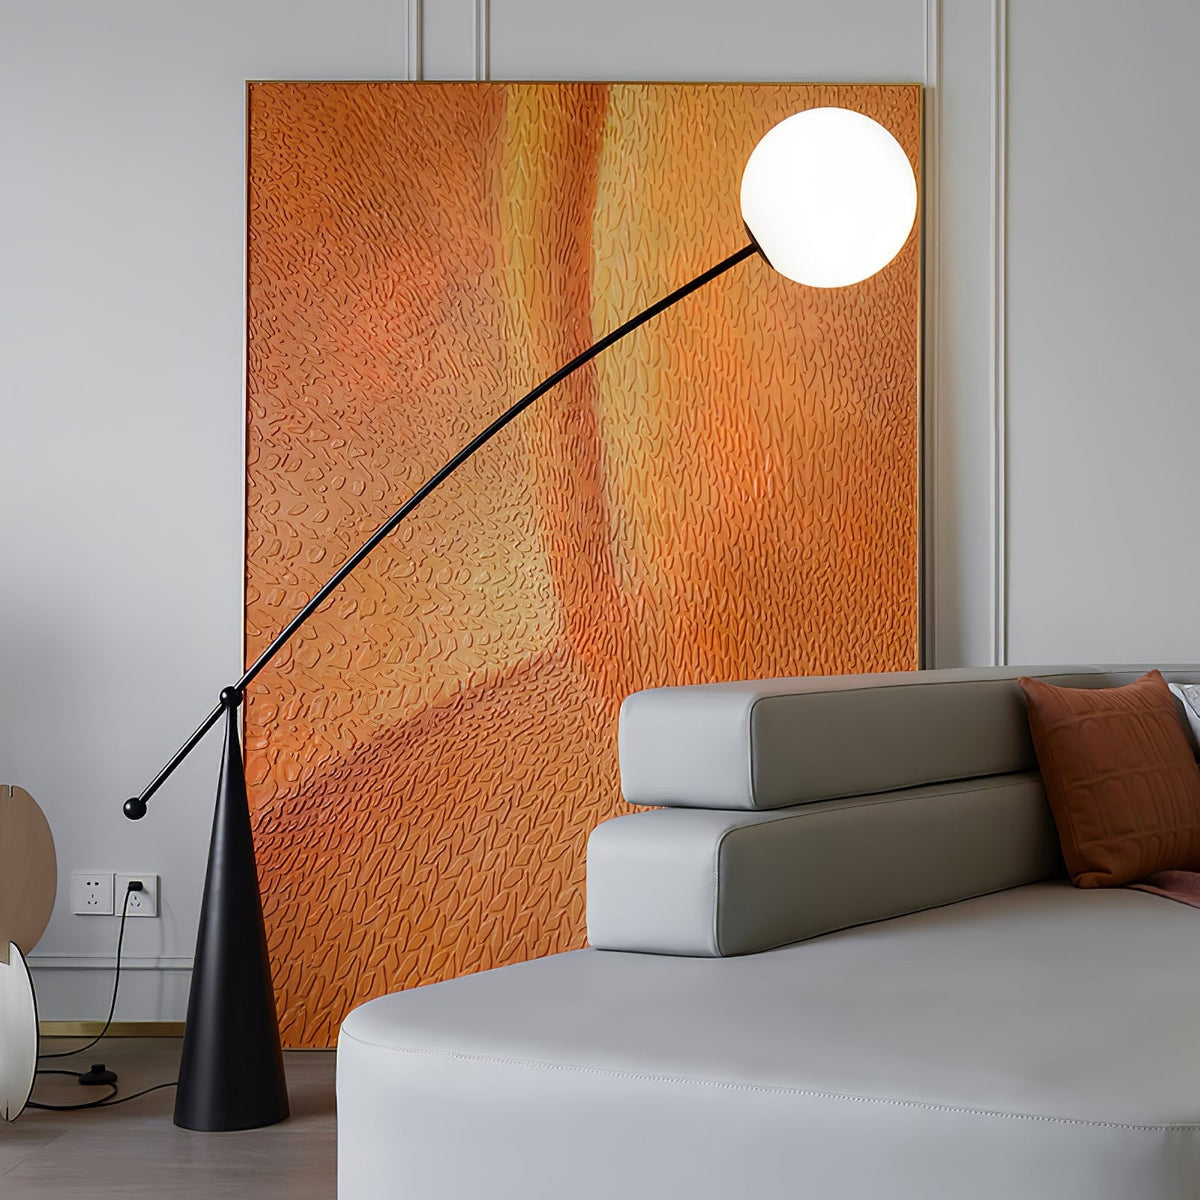 Modern Stainless Steel & Glass Floor Lamp For Living Room - Lamps